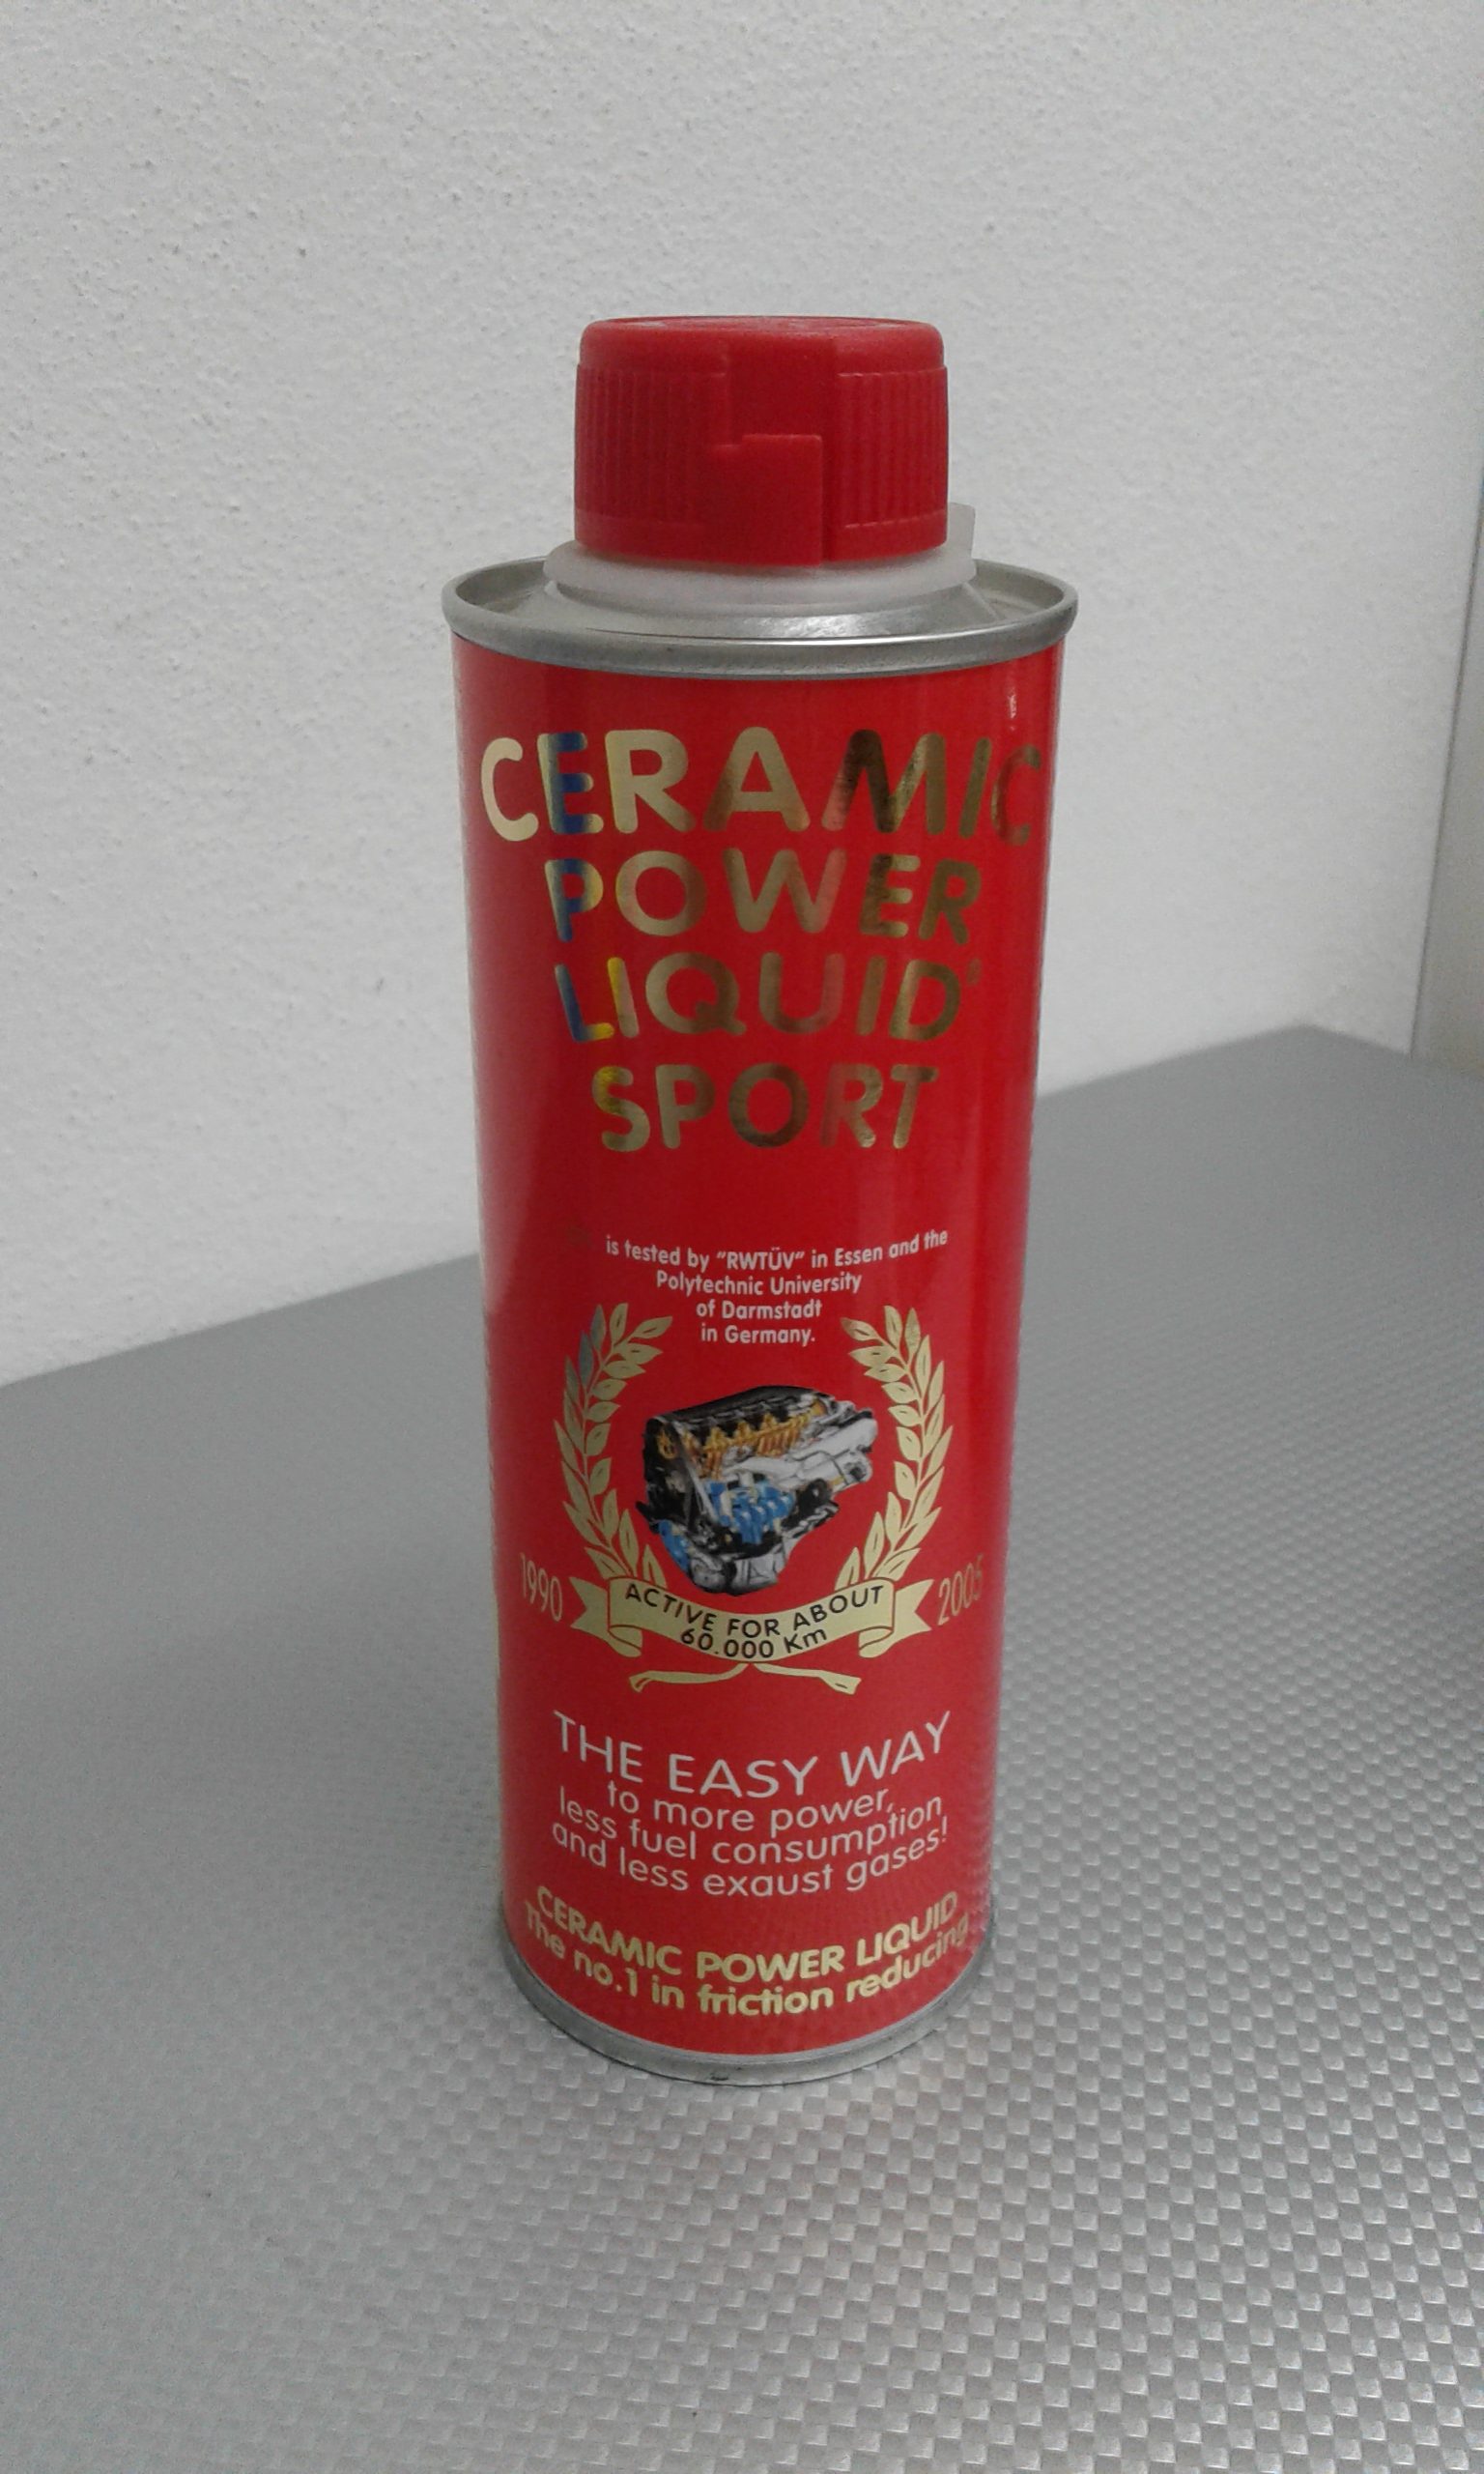 Ceramic power liquid sport 300 ml